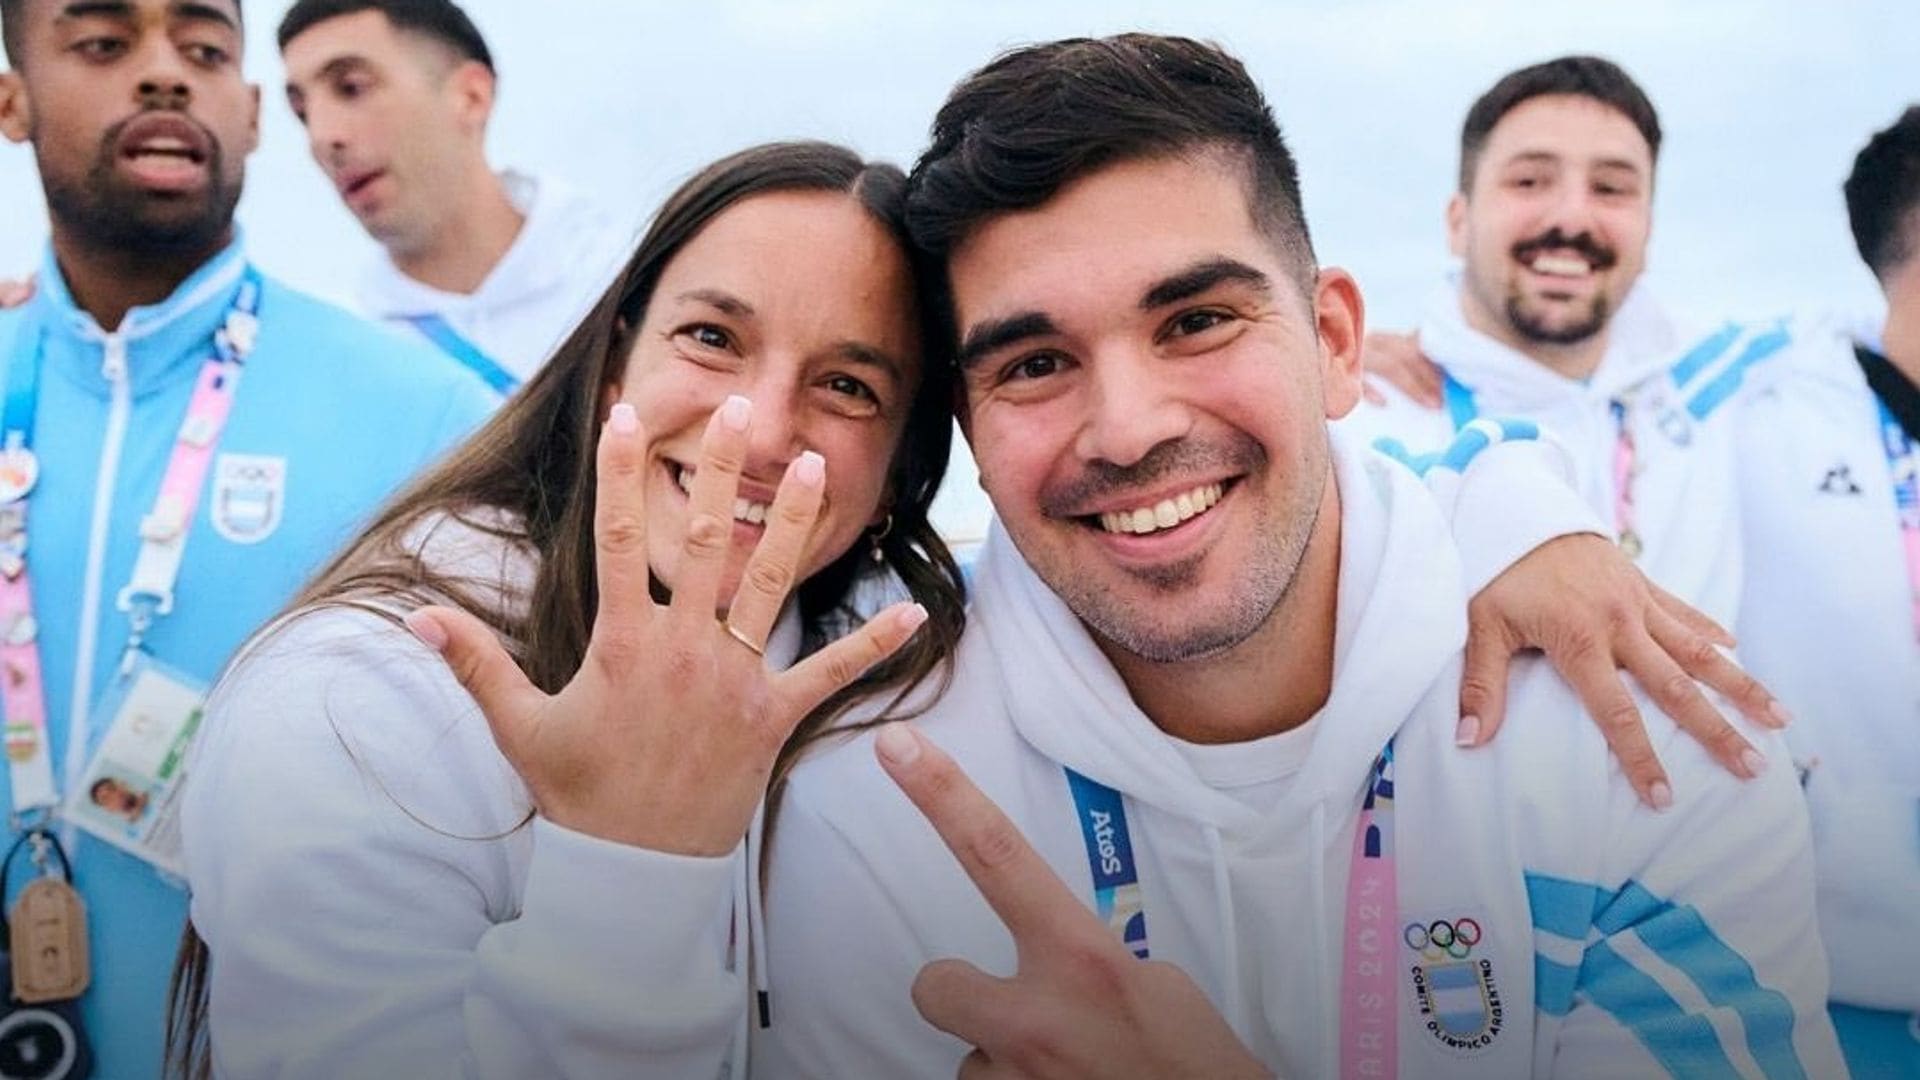 Pablo Simonet y Pilar Campoy, los atletas argentinos que se comprometieron en París 2024.